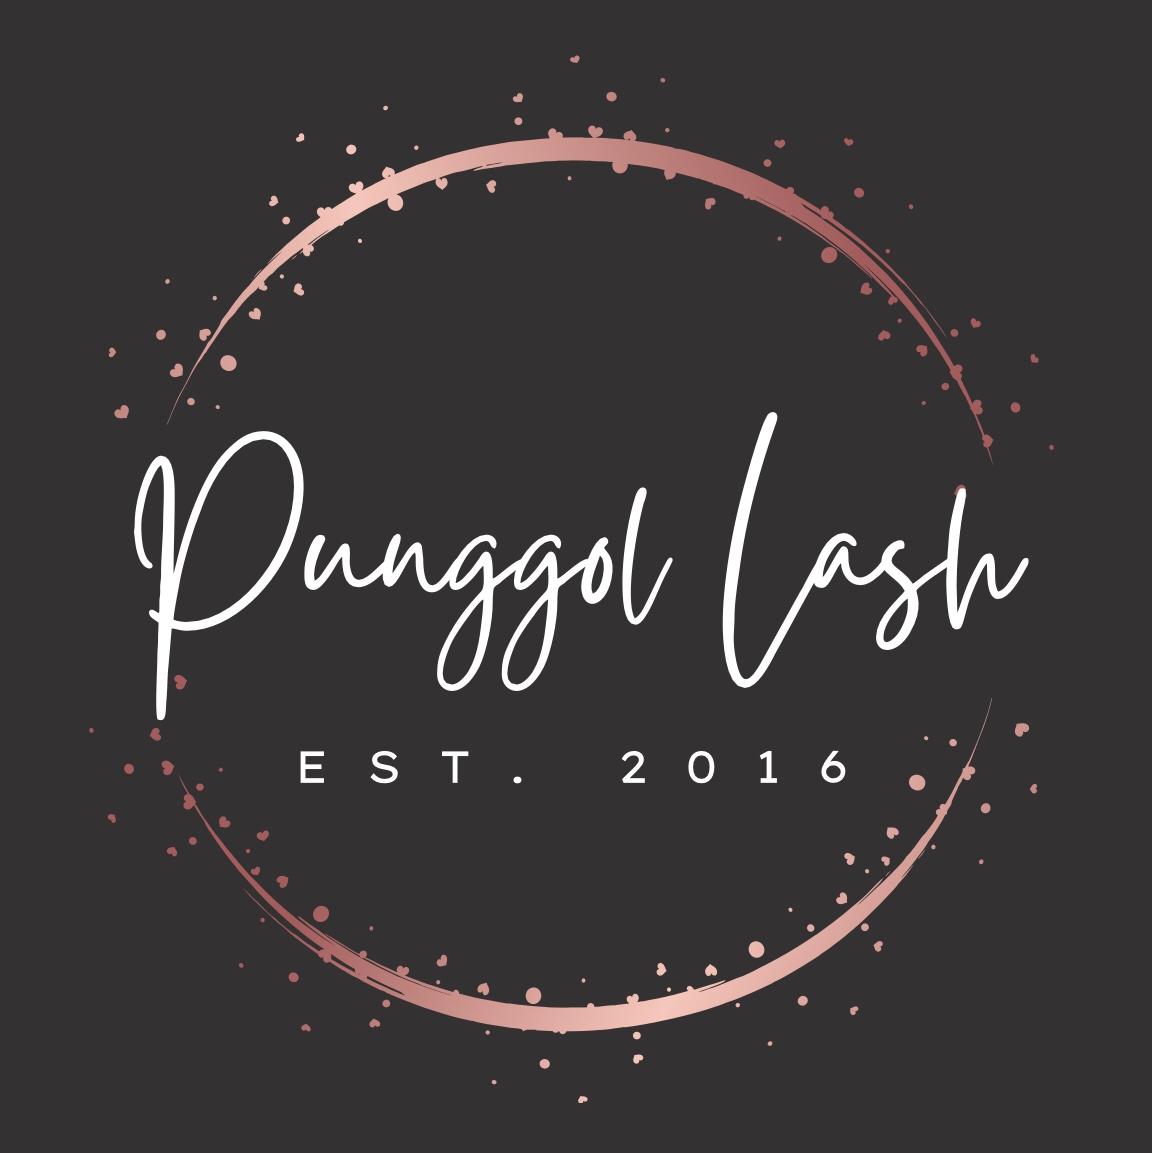 Punggol EmSlim's images